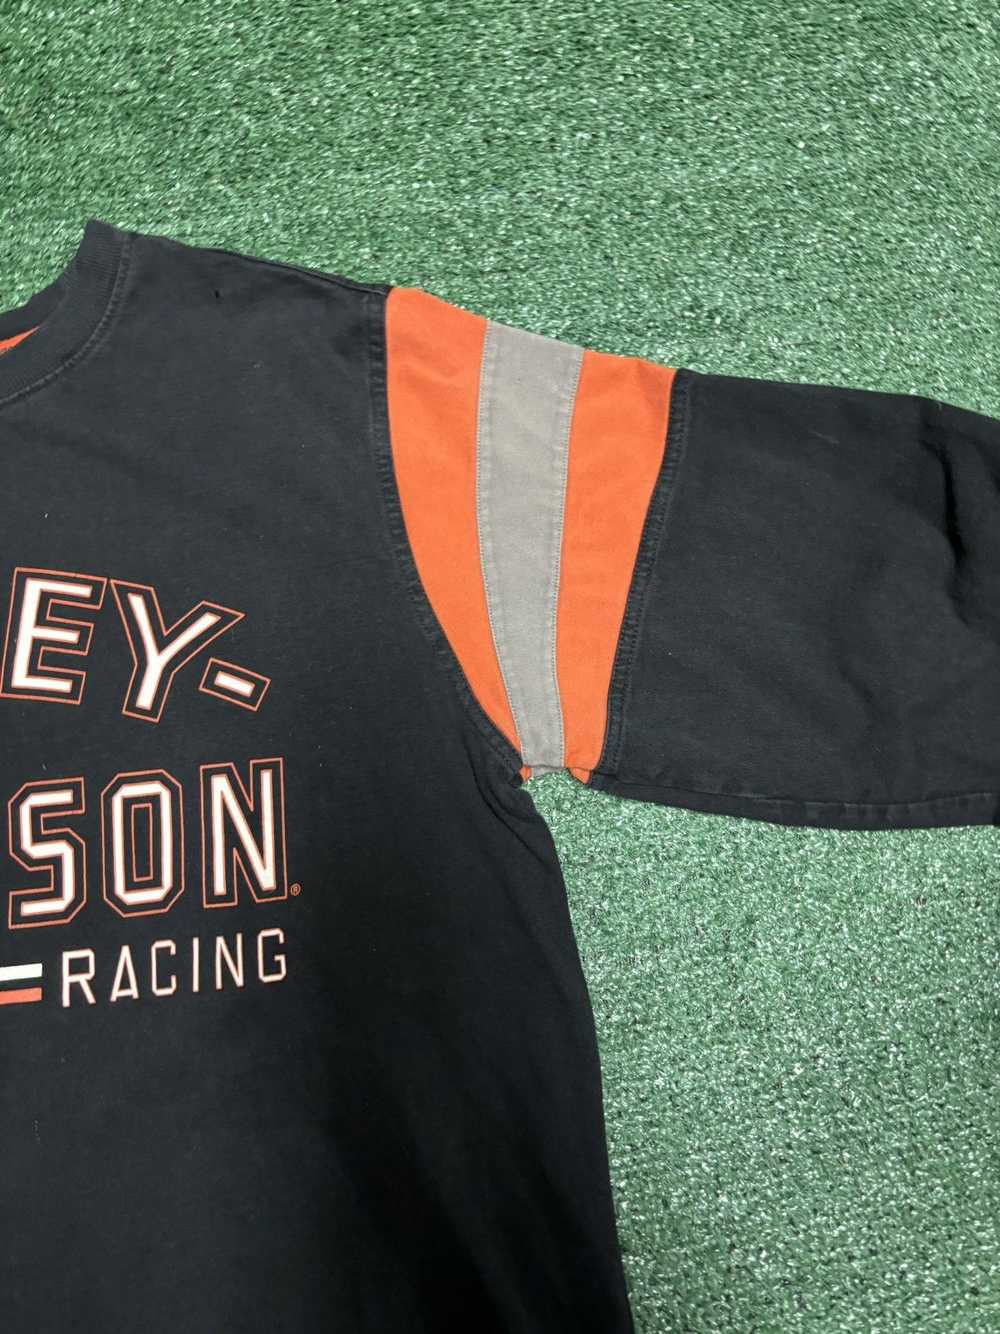 Harley Davidson Harley Davidson Racing Long Sleev… - image 5